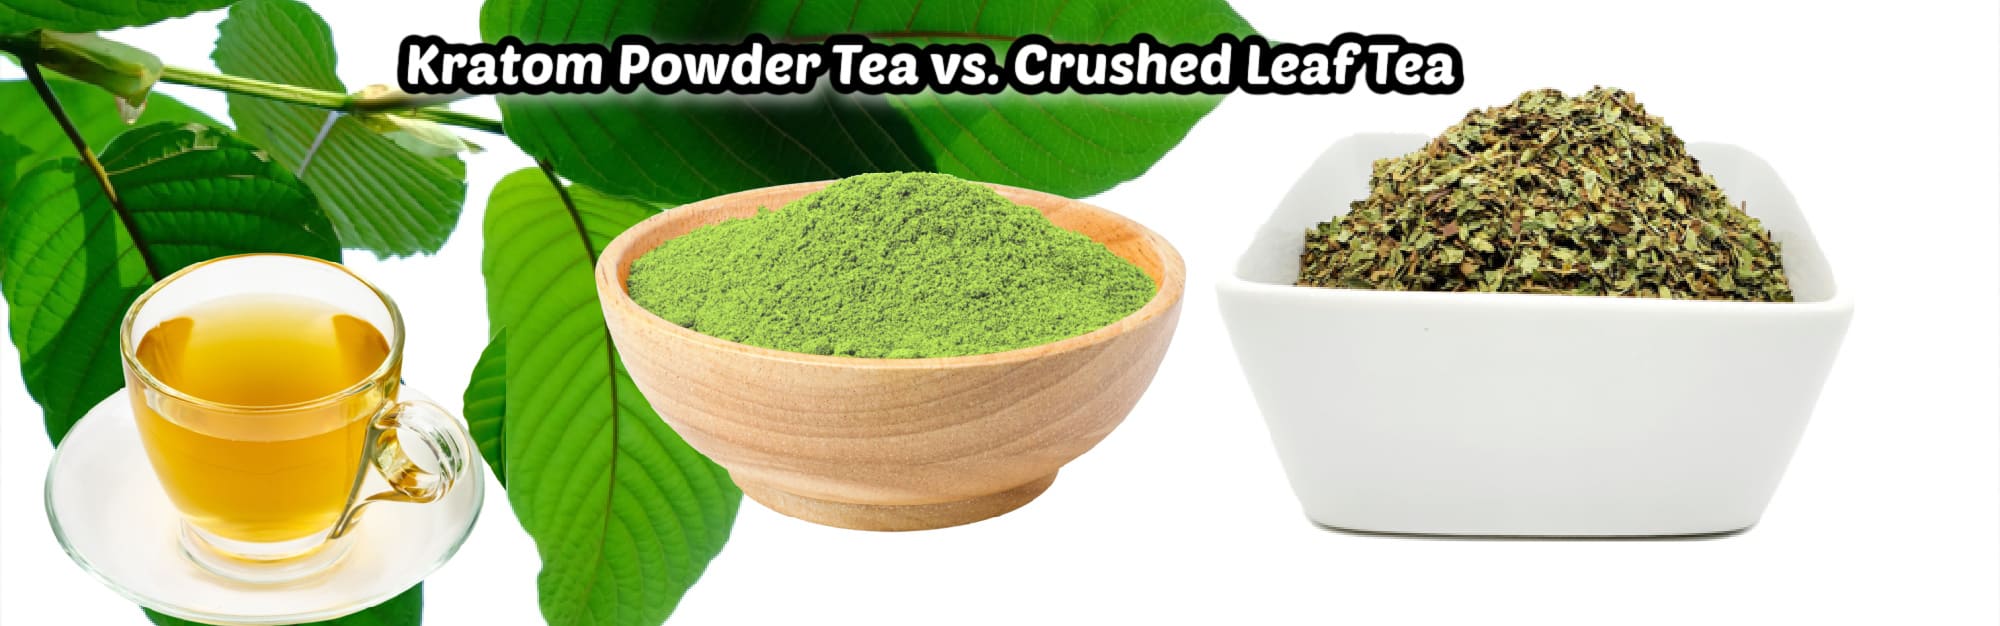 image of kratom powder tea vs crused leaf kratom tea